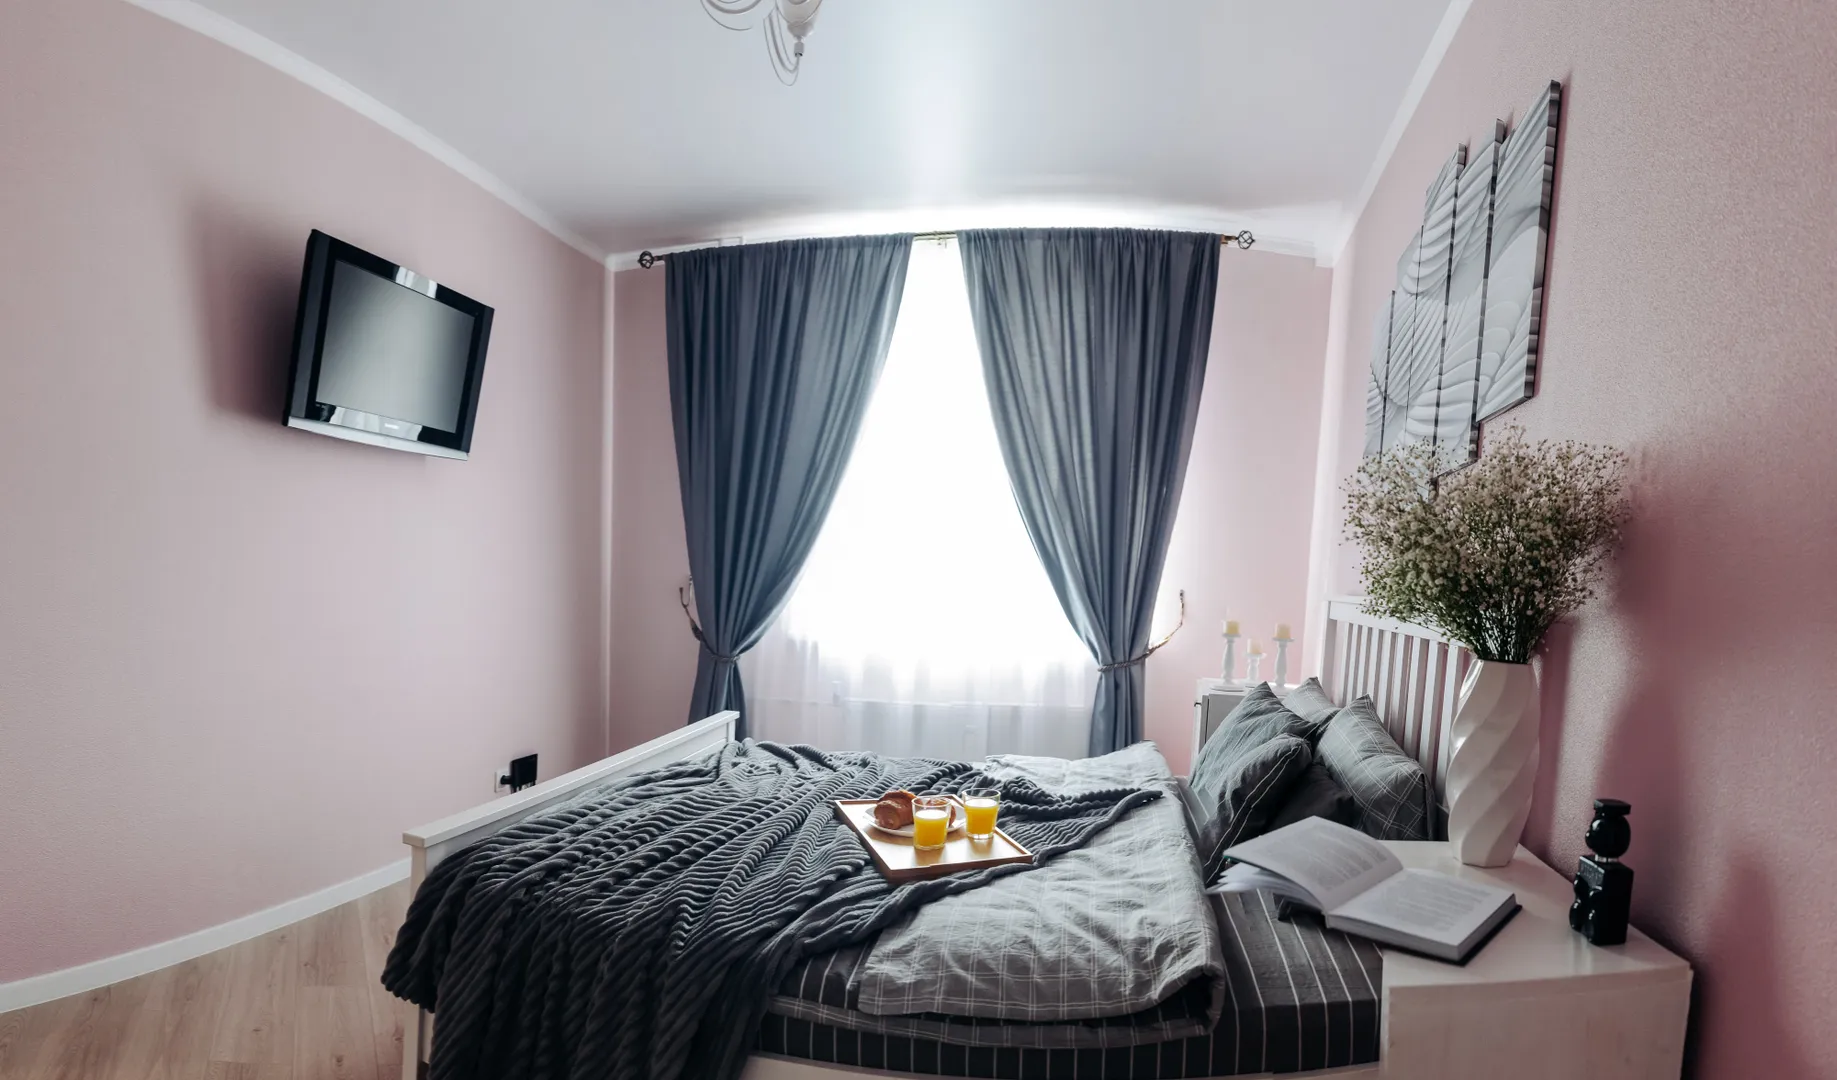 Спальня (фото сделано специально в сжатом виде, чтобы показать полную картину, WIFI и ТВ с приставкой)